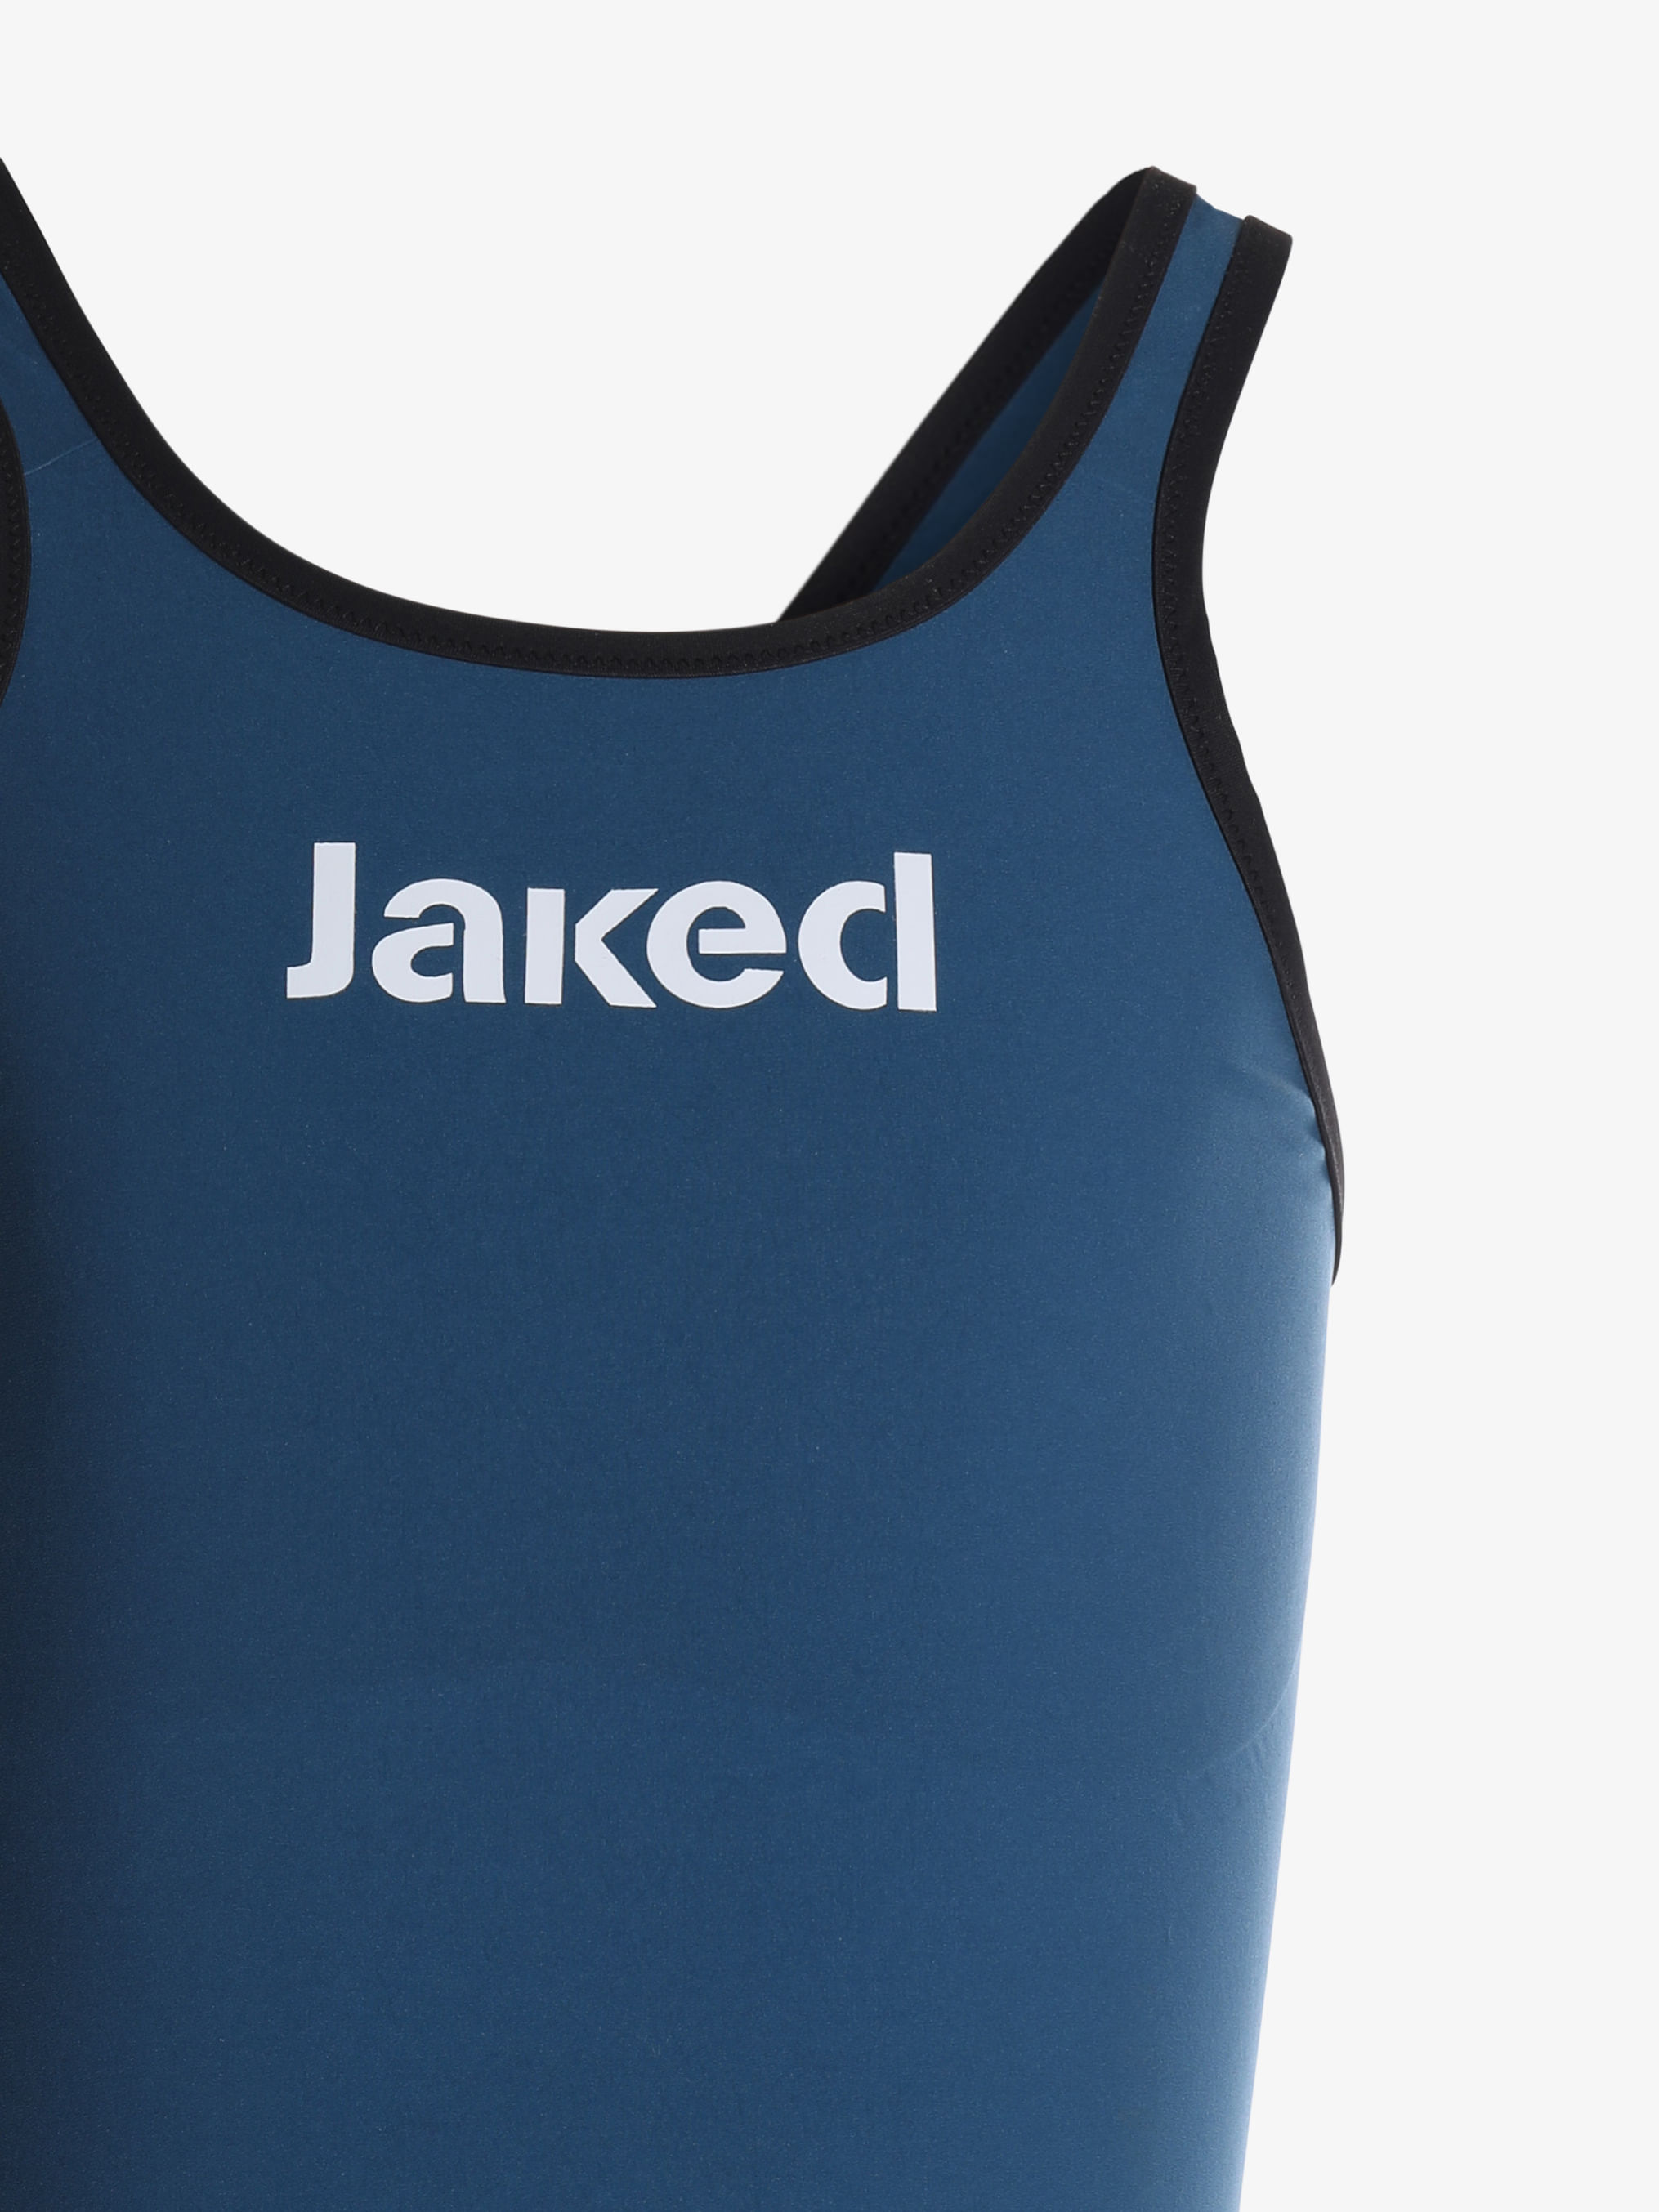 olanderswim.eu - Jaked JKATANA open back competition swimsuit